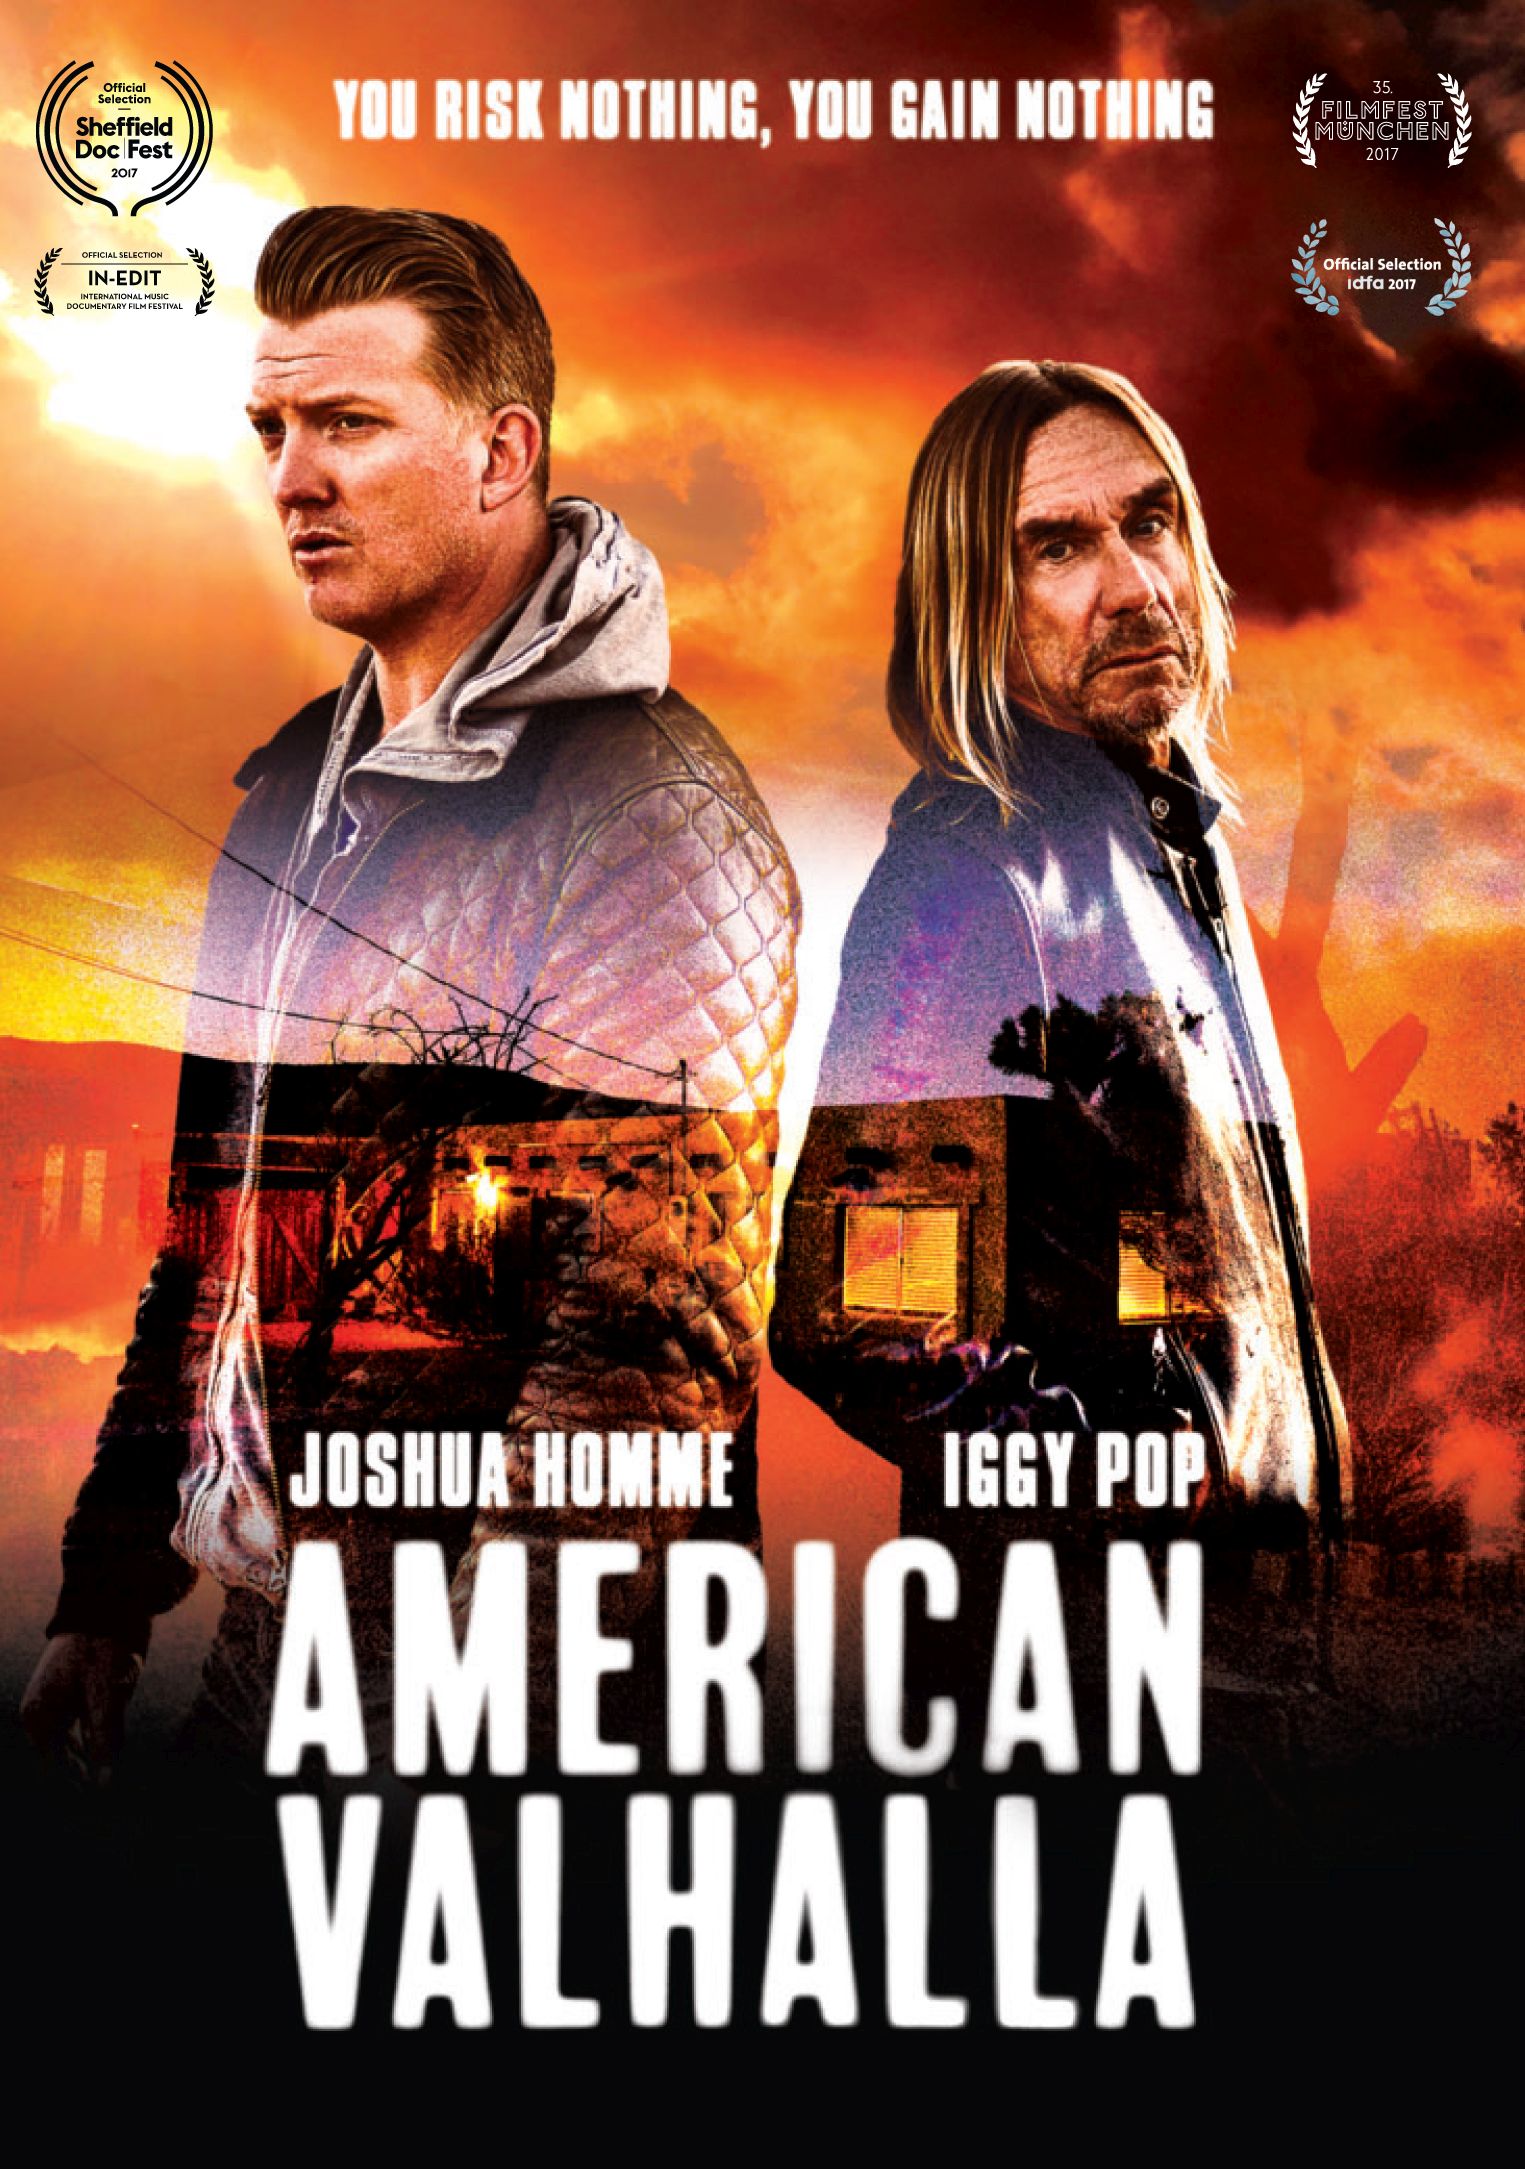 American Valhalla - Iggy Pop i Josh Homme - dvd premiera 9 marca